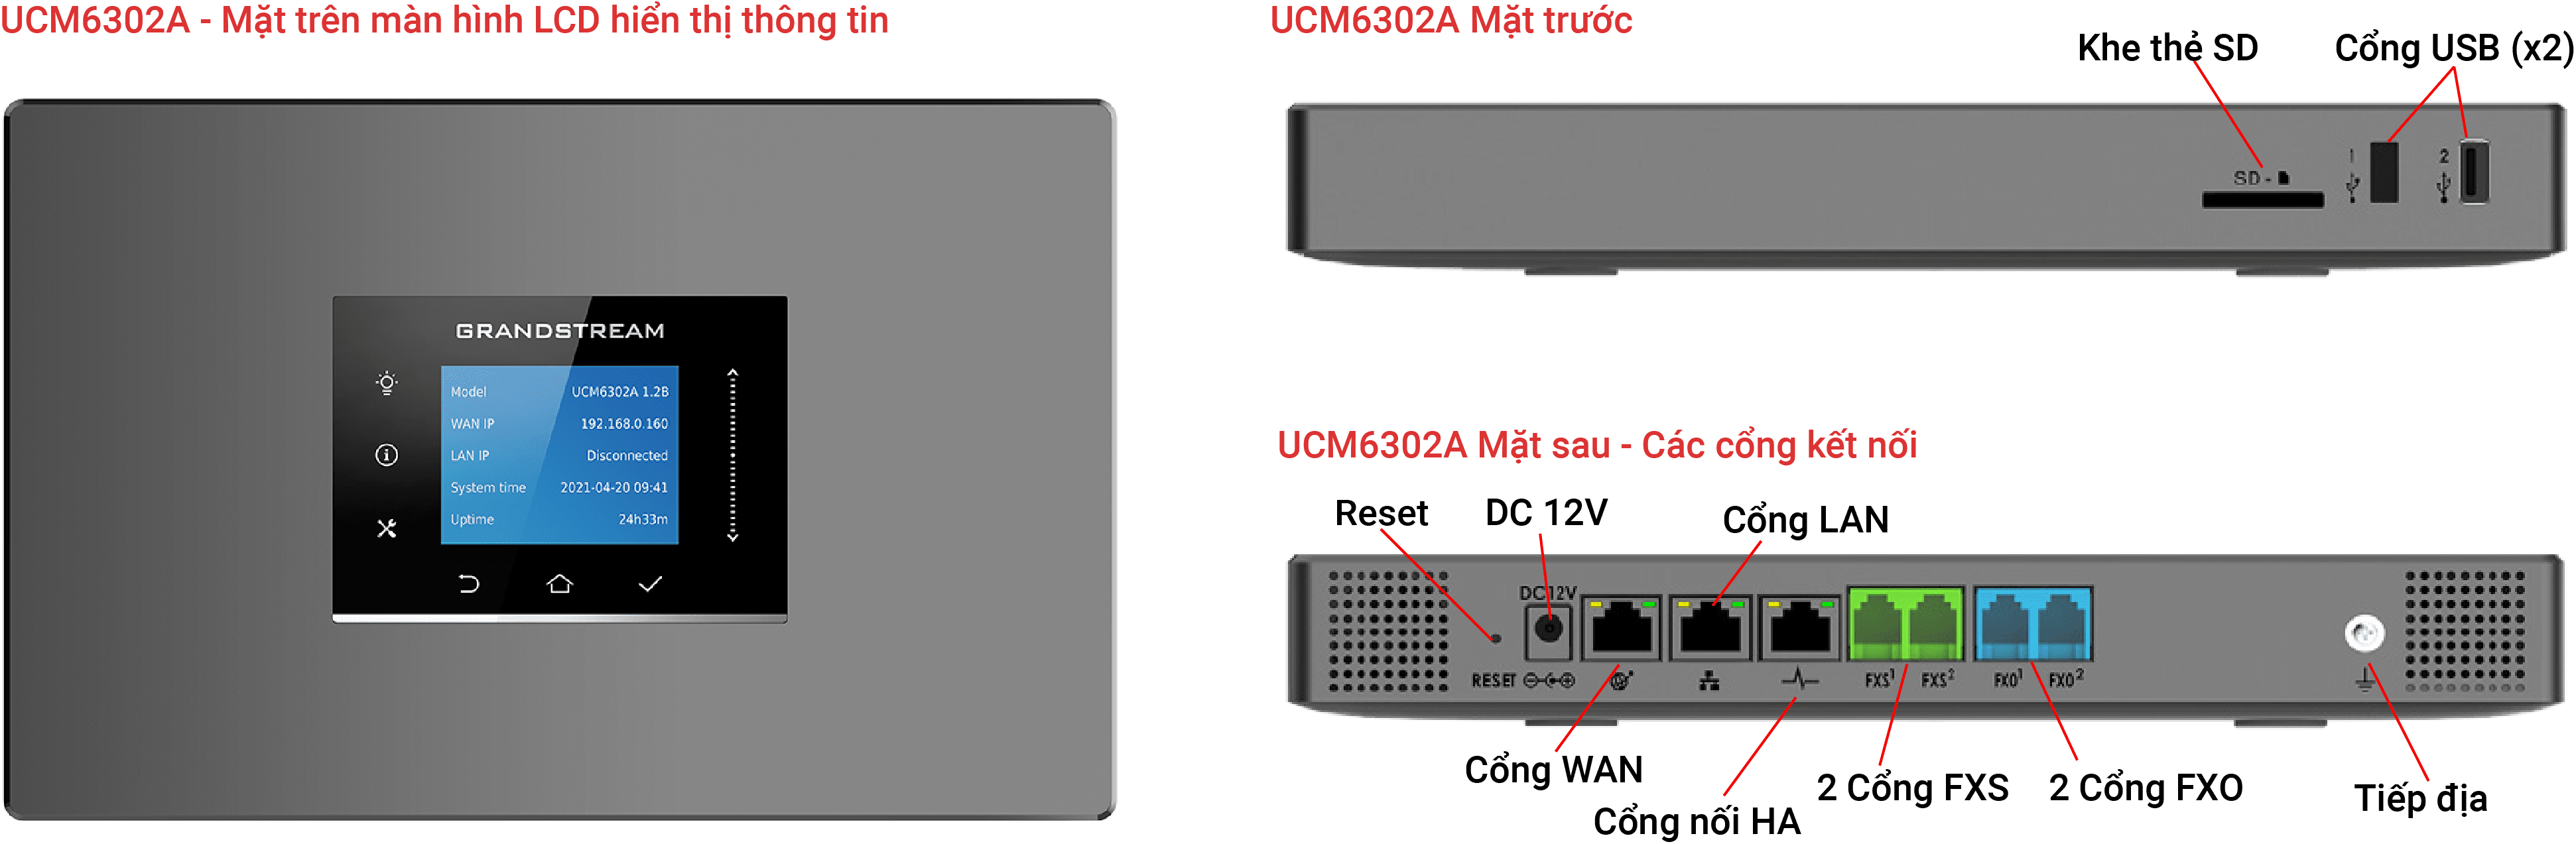 Tổng đài IP UCM6302A - 500 máy lẻ và 75 cuộc gọi đồng thời